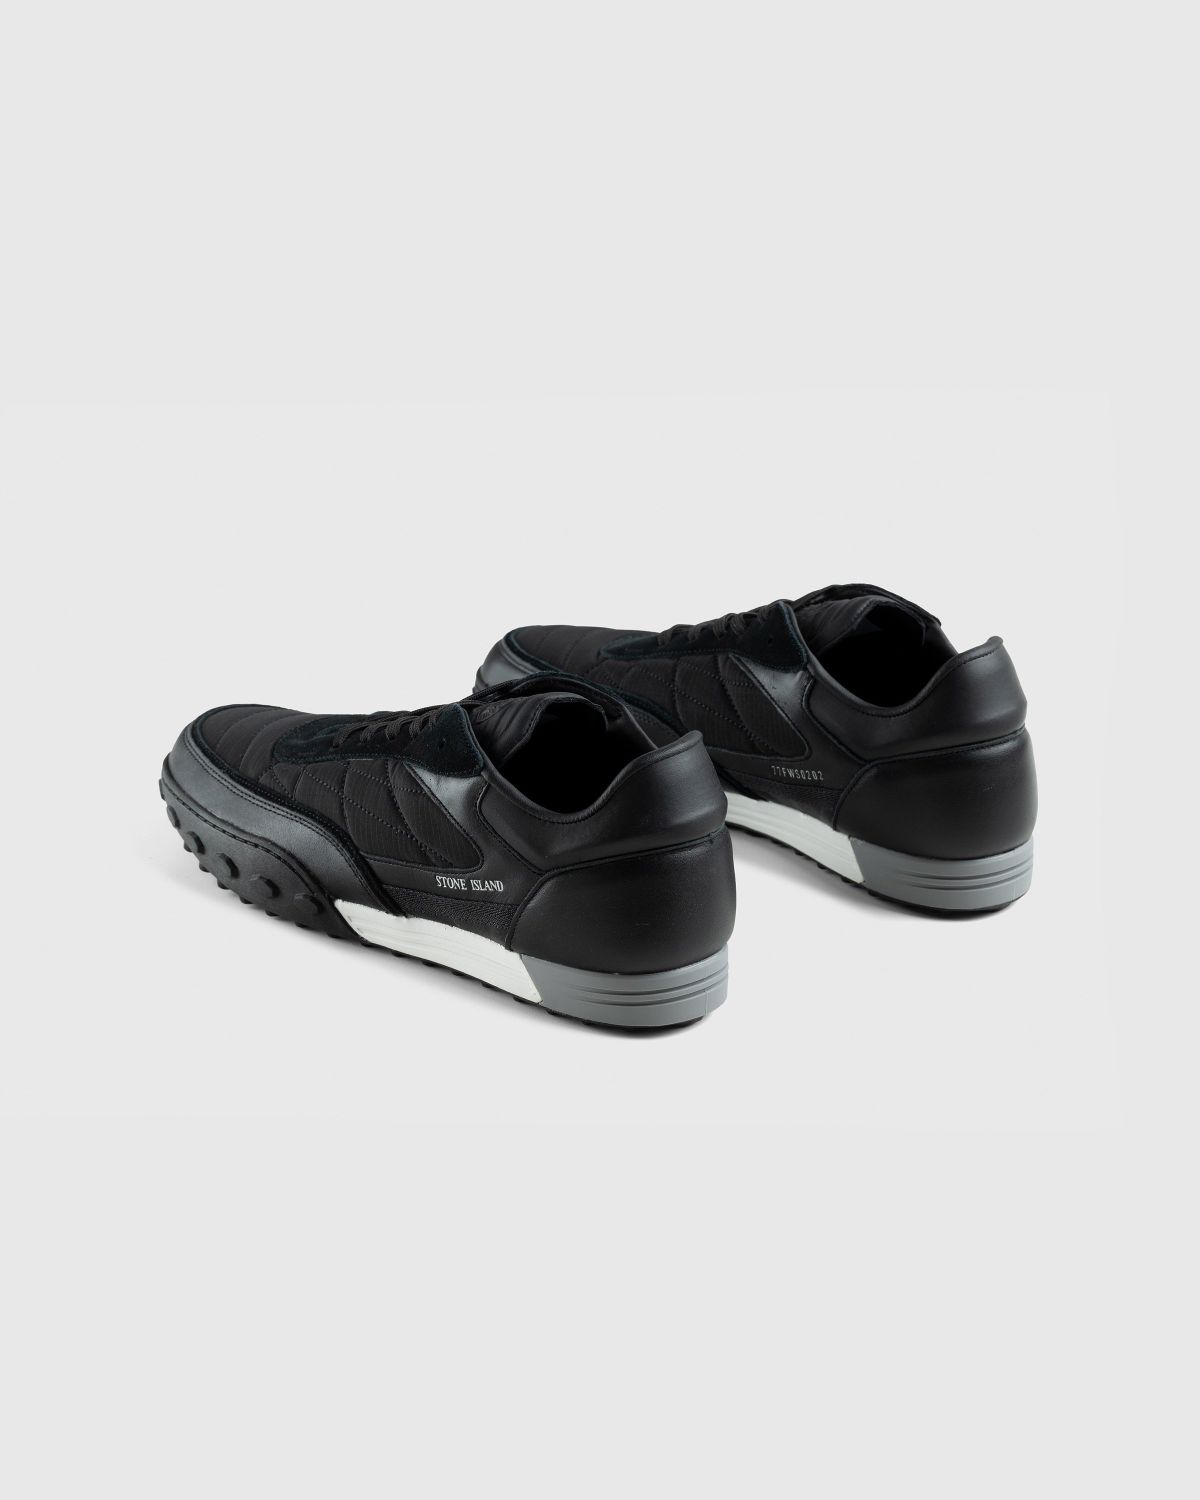 Stone Island – Football Sneaker Black - Low Top Sneakers - Black - Image 4